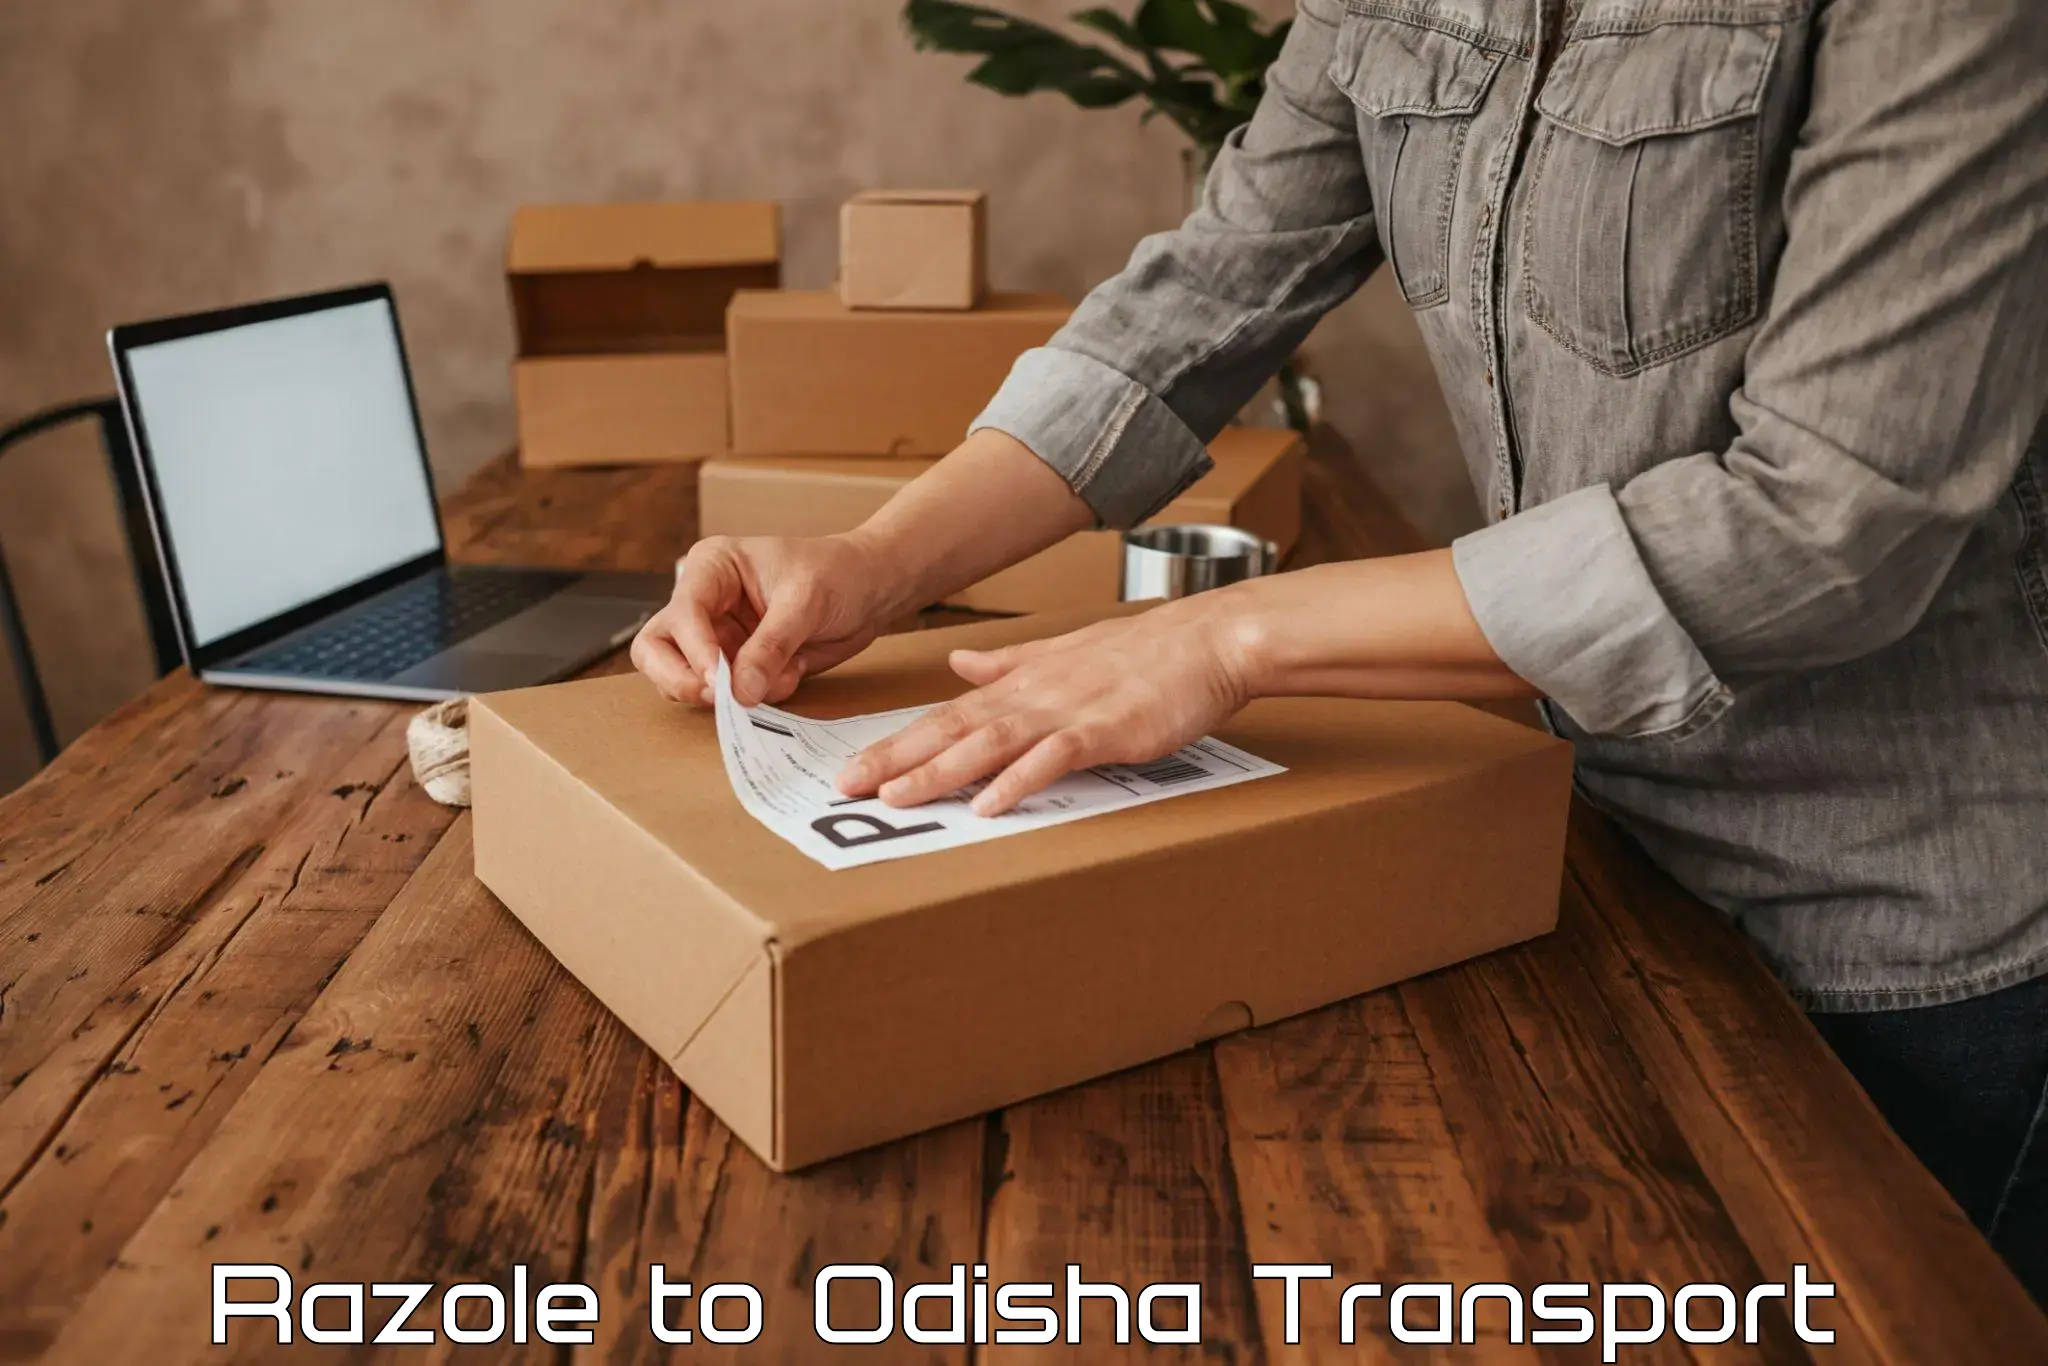 Scooty transport charges Razole to Odisha